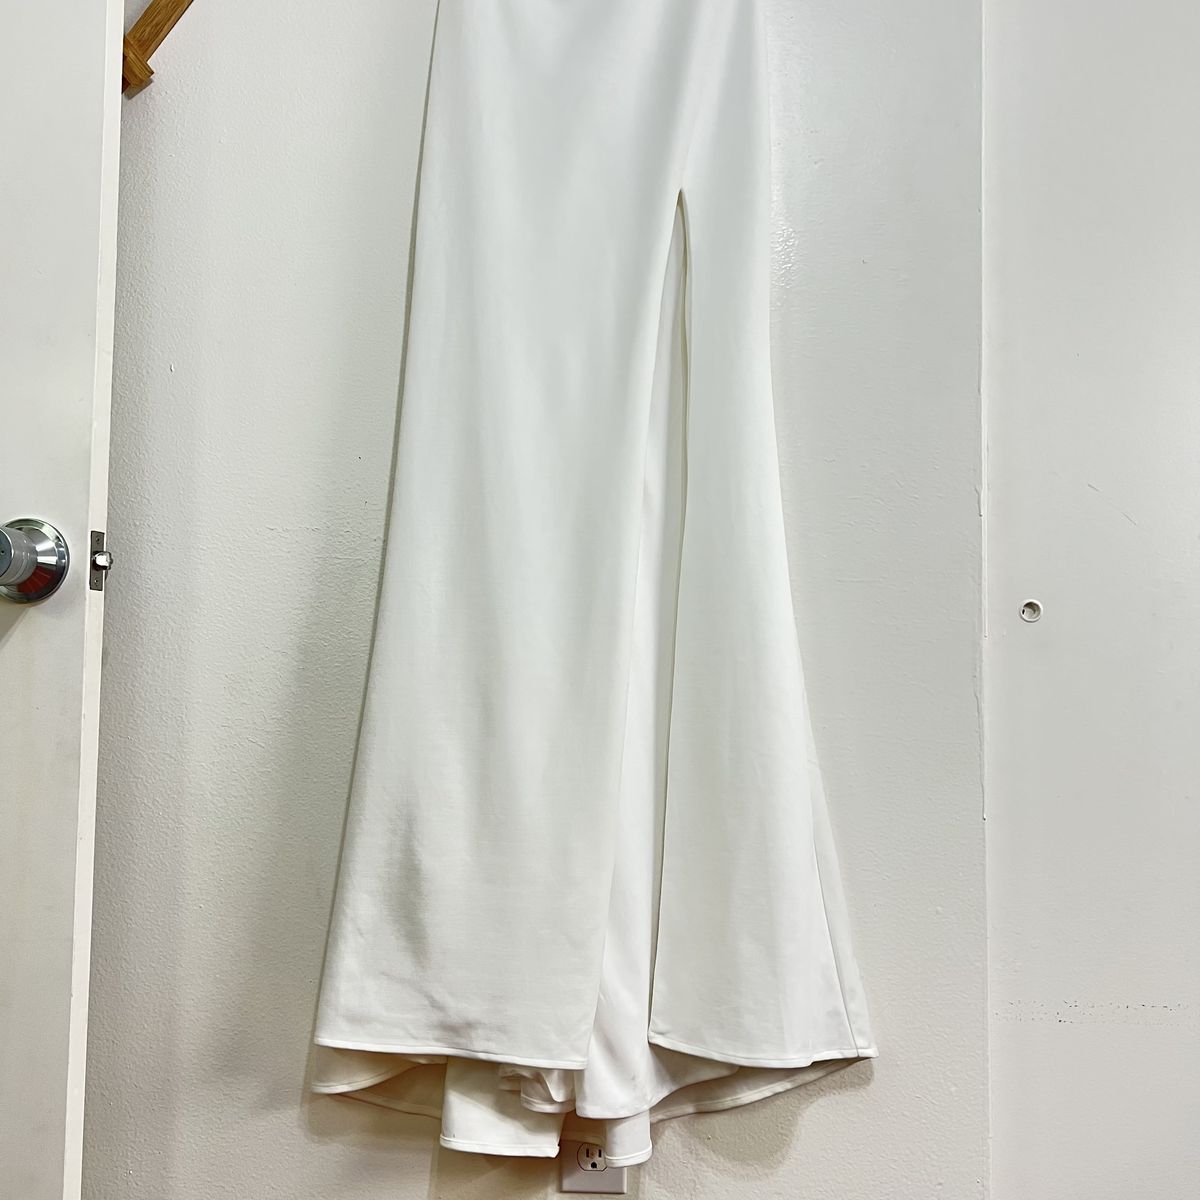 Style 28176 La Femme Size 2 One Shoulder White Side Slit Dress on Queenly